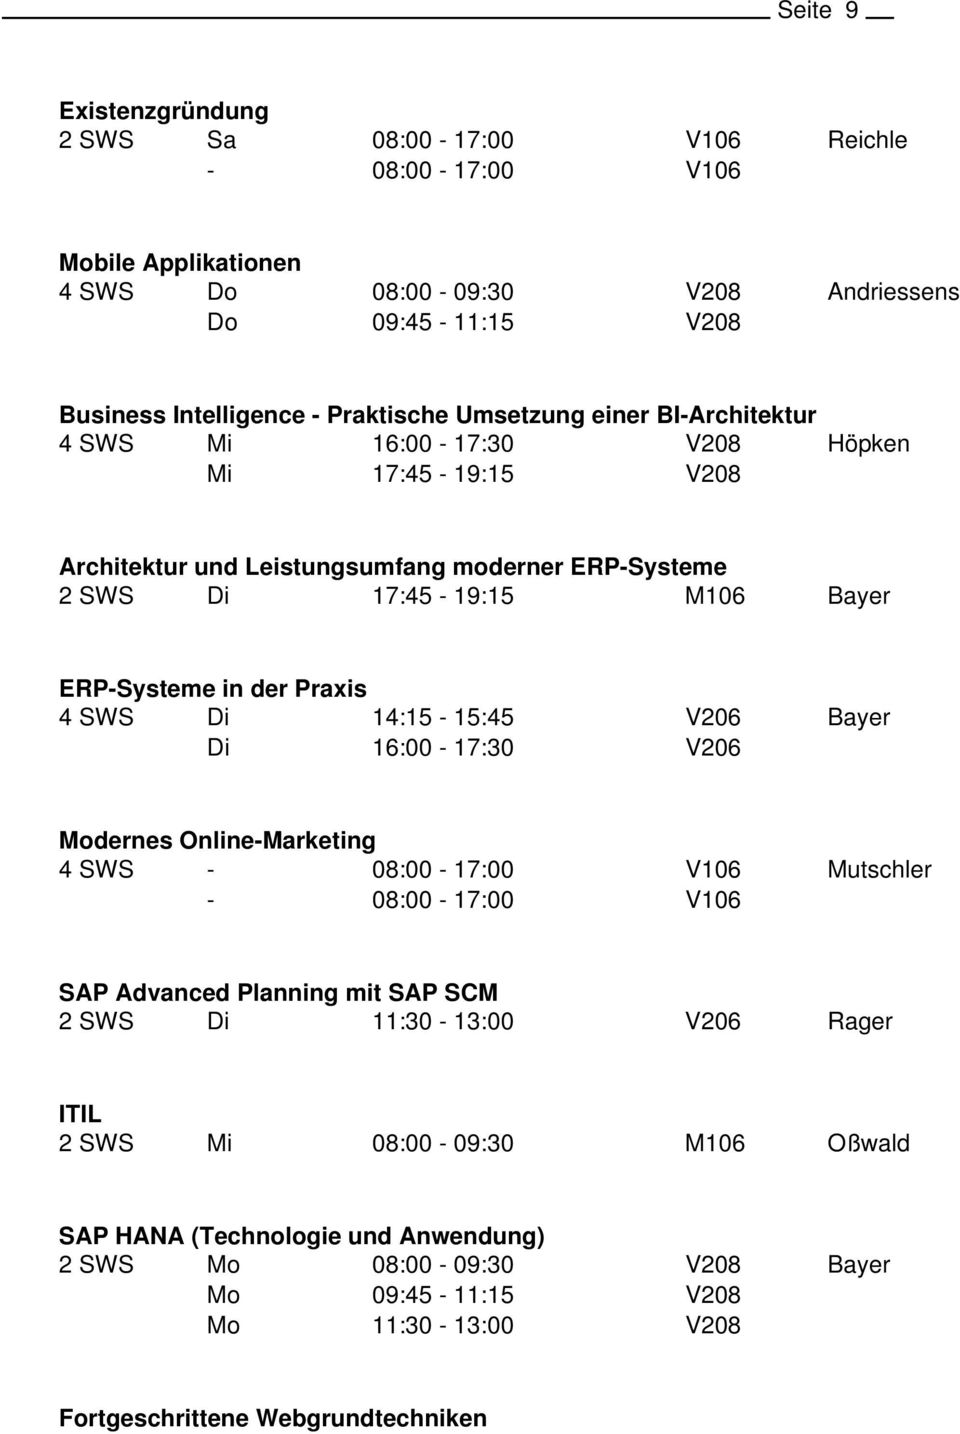 ERP-Systeme 2 SWS 17:45-19:15 ERP-Systeme in der Praxis 4 SWS dernes Online-Marketing 4 SWS - - Mutschler SAP